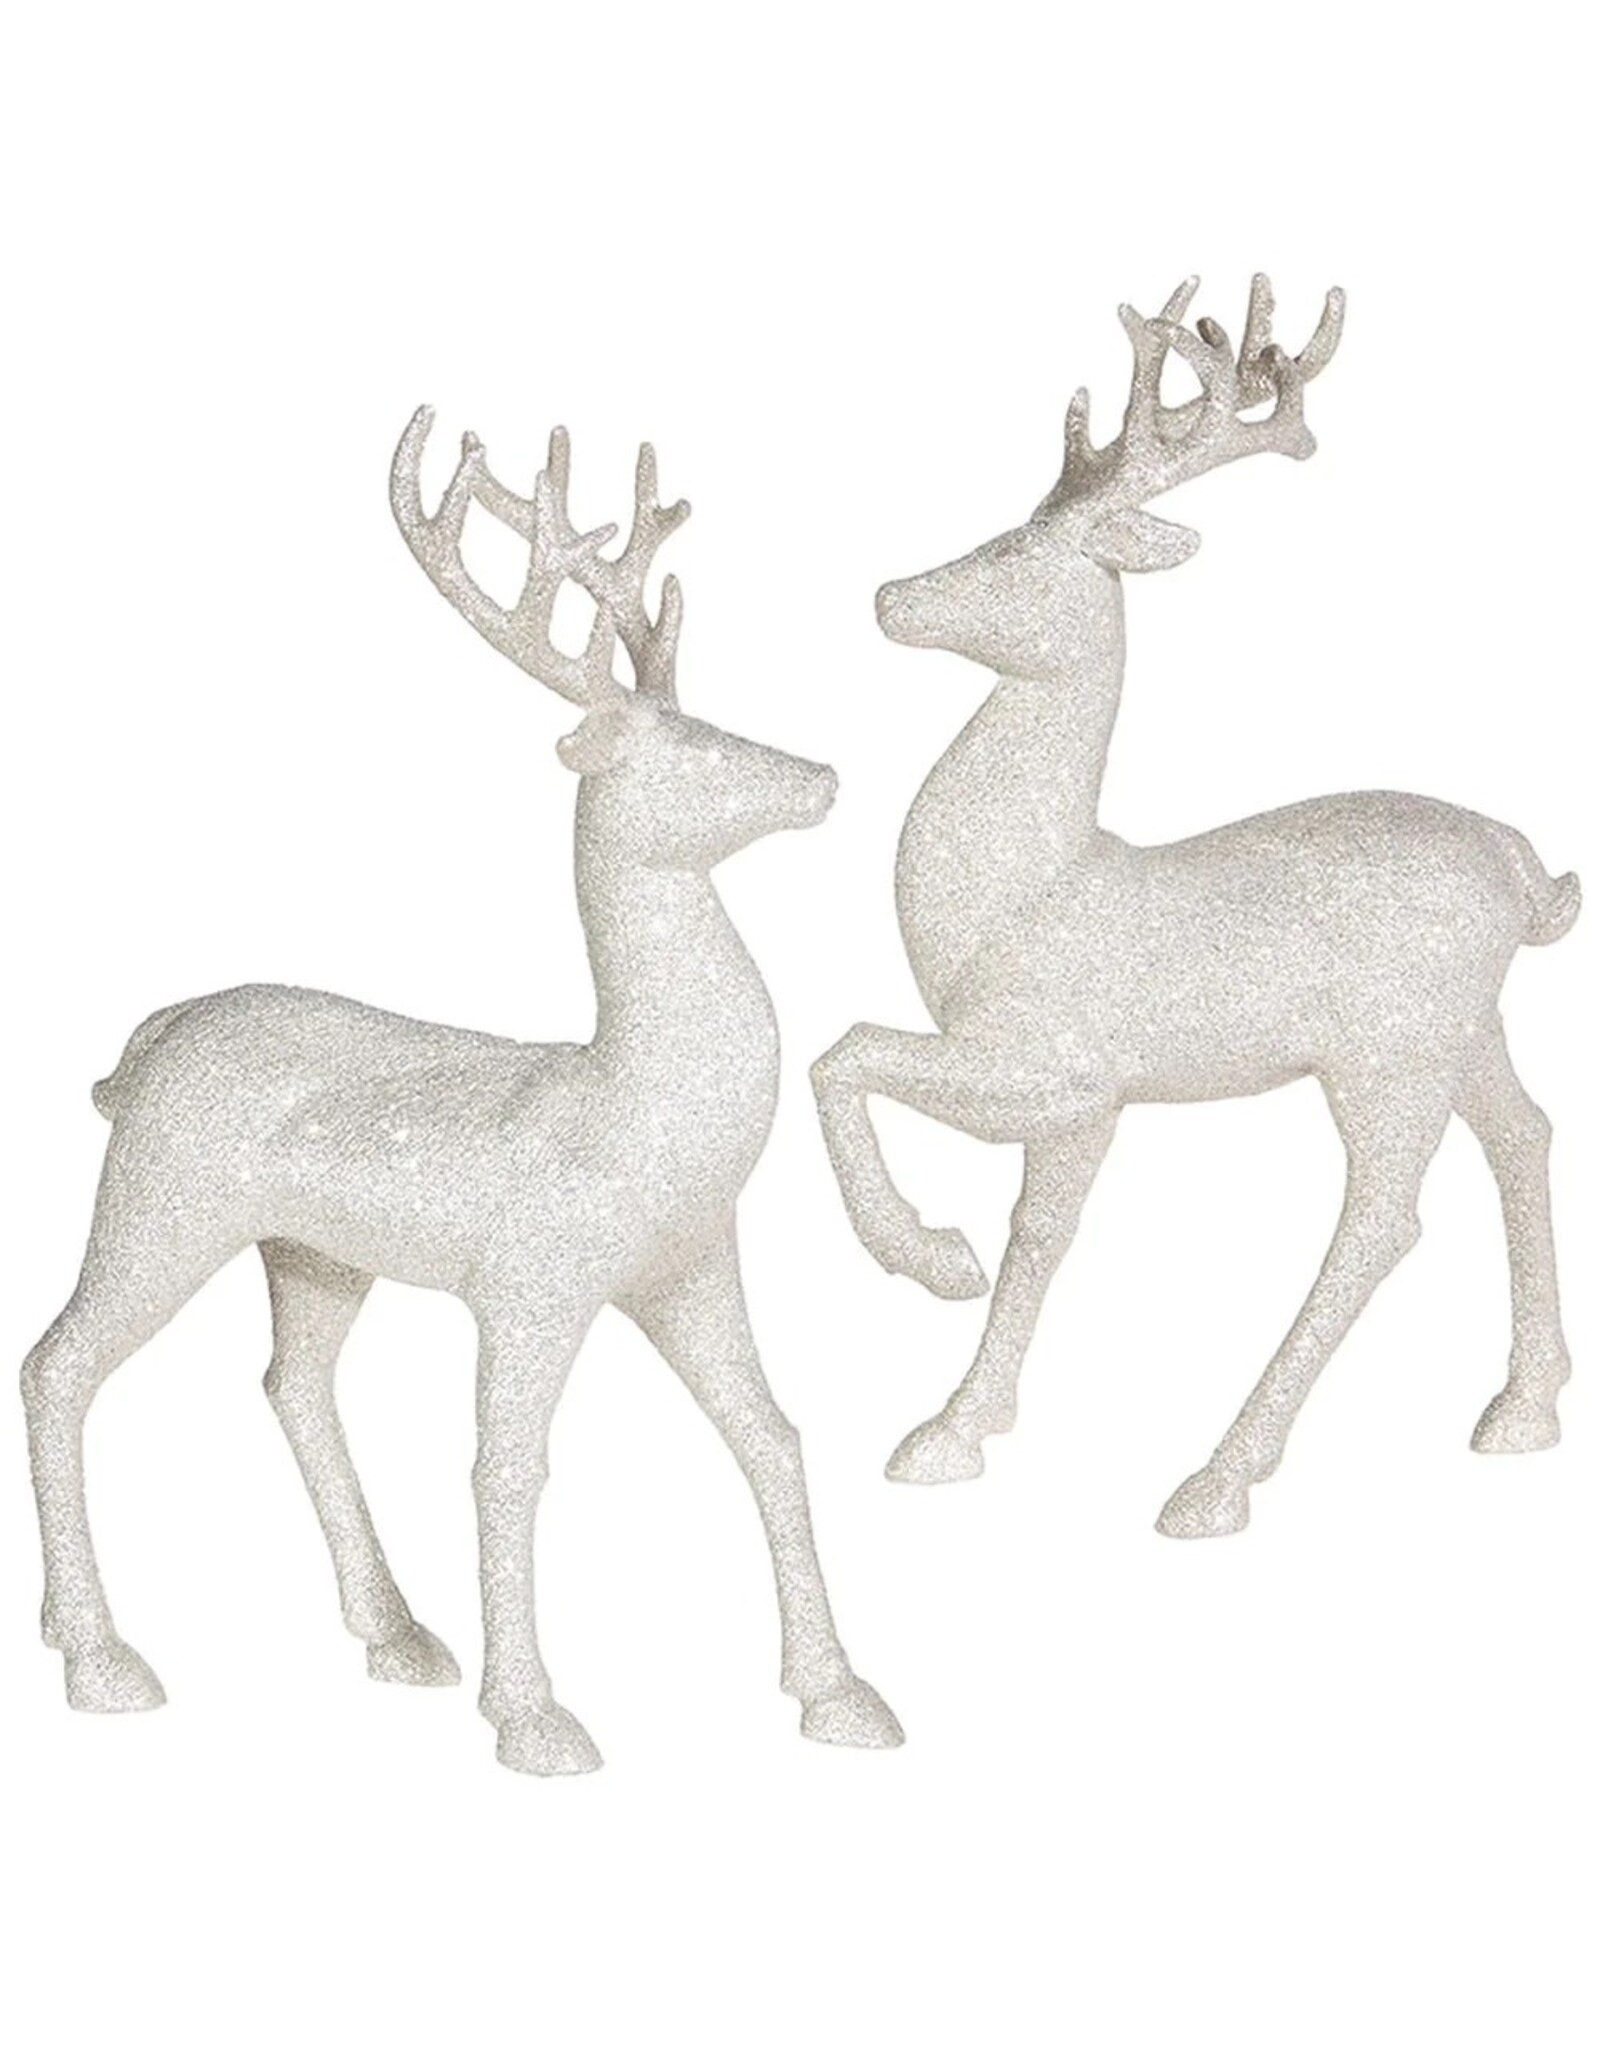 Raz Imports 12.75-Inch Glittered Deer Figurine